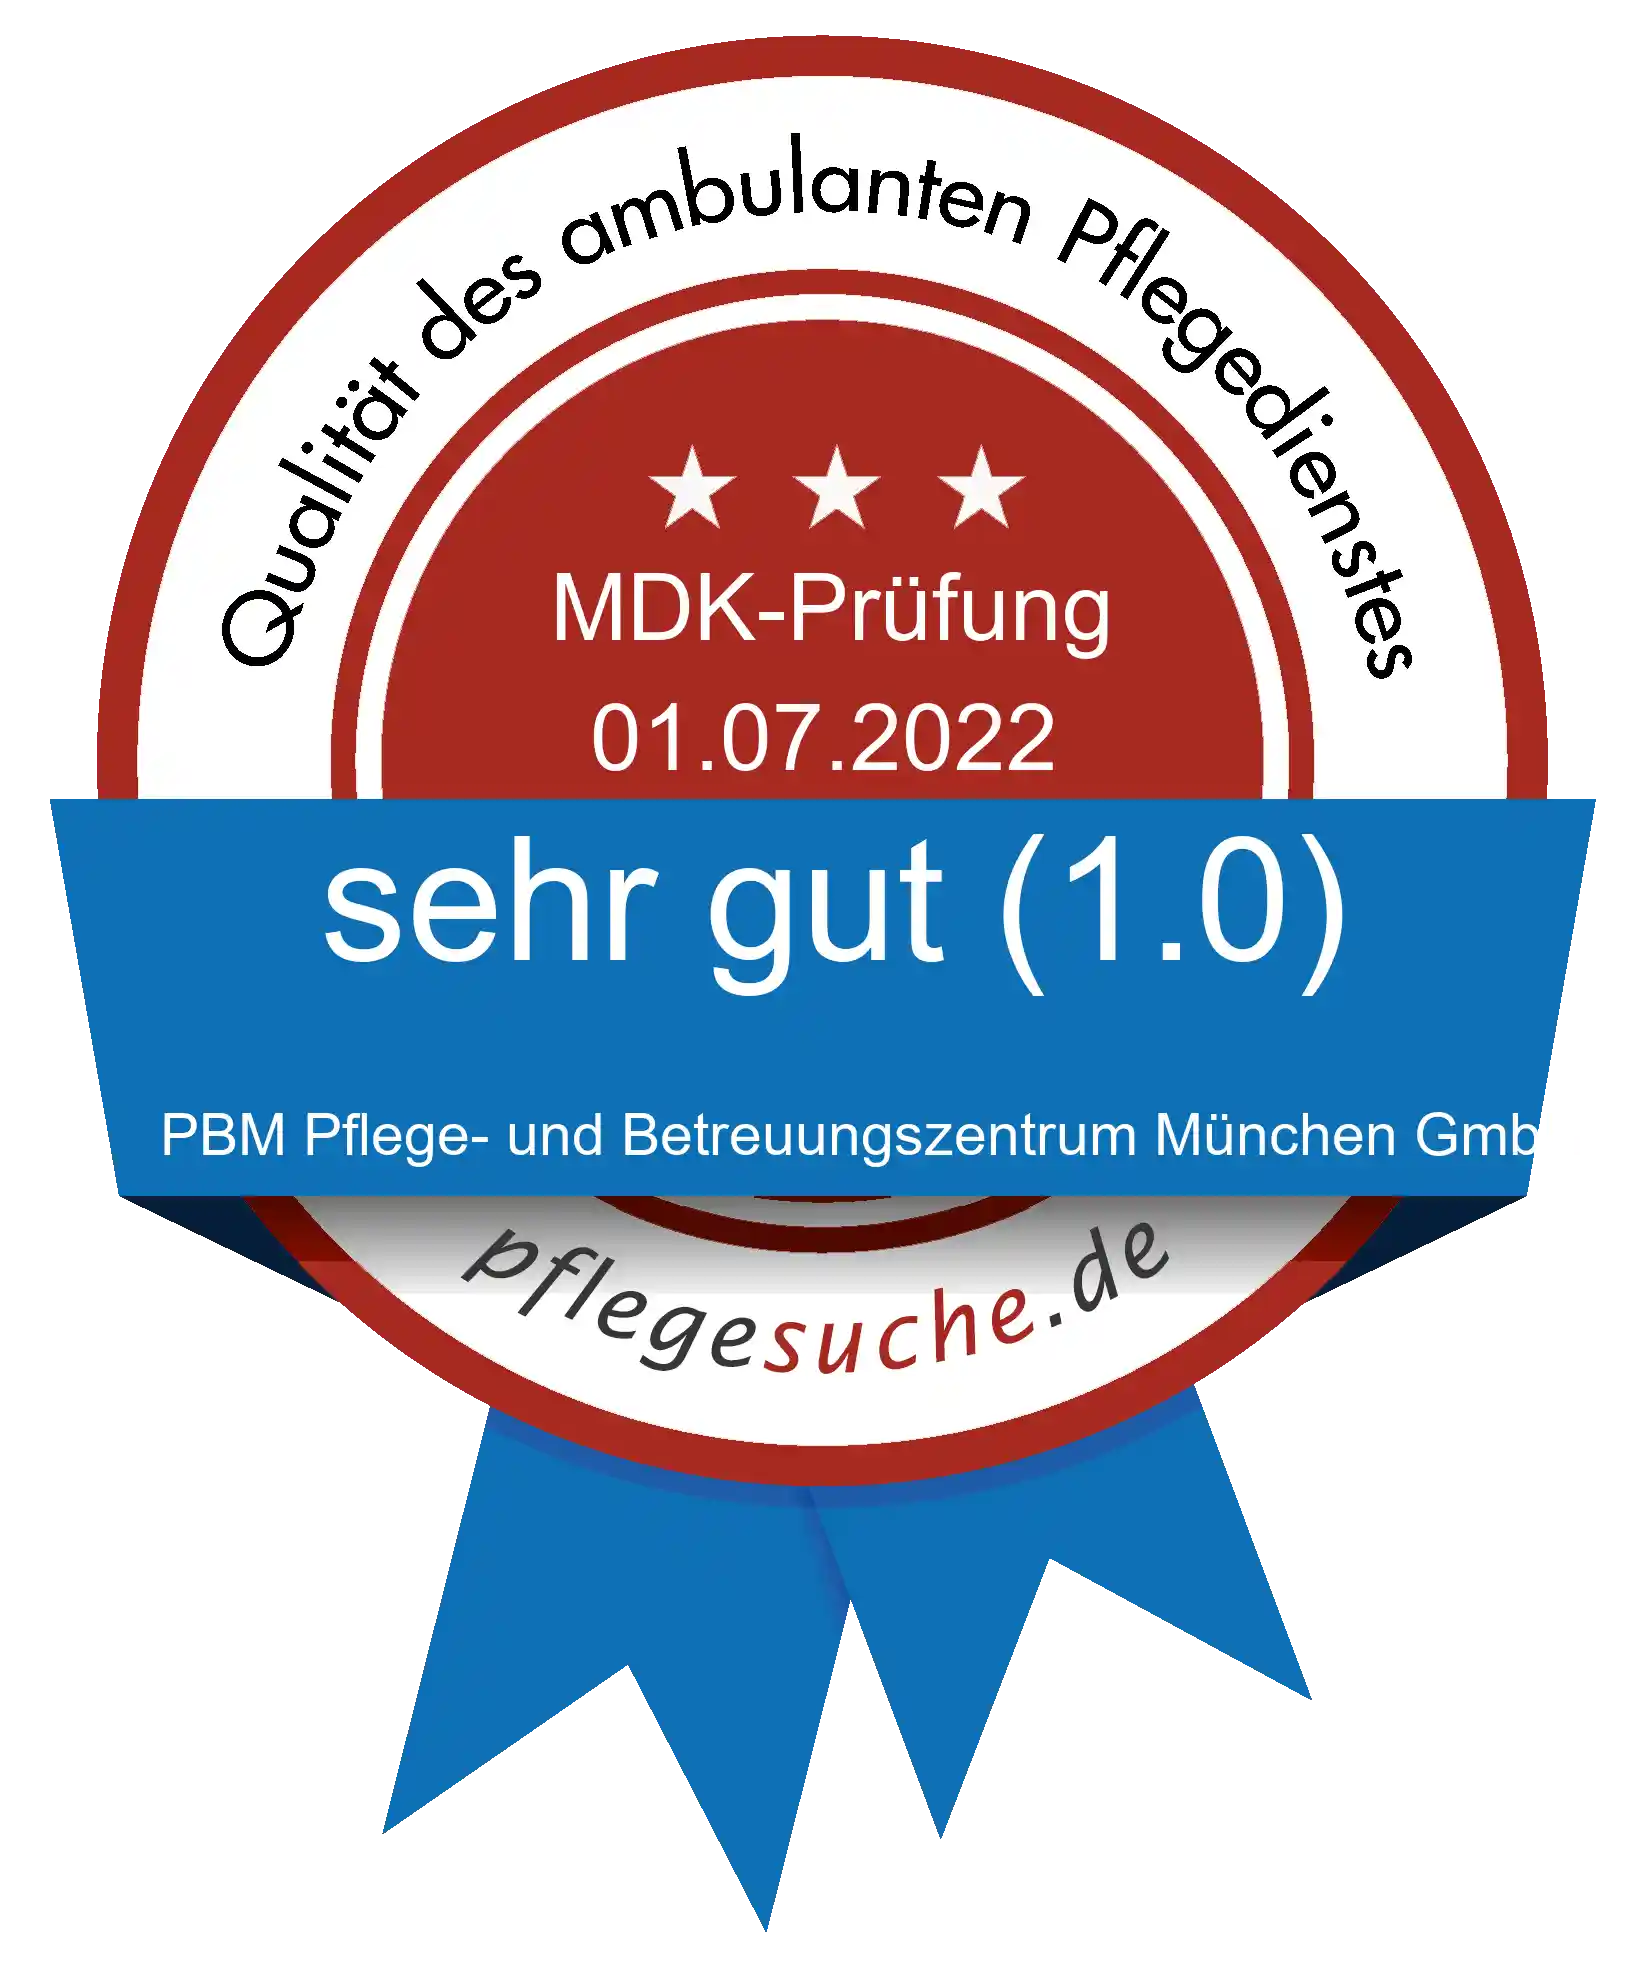 Siegel Benotung: PBM Pflege- und Betreuungszentrum München GmbH